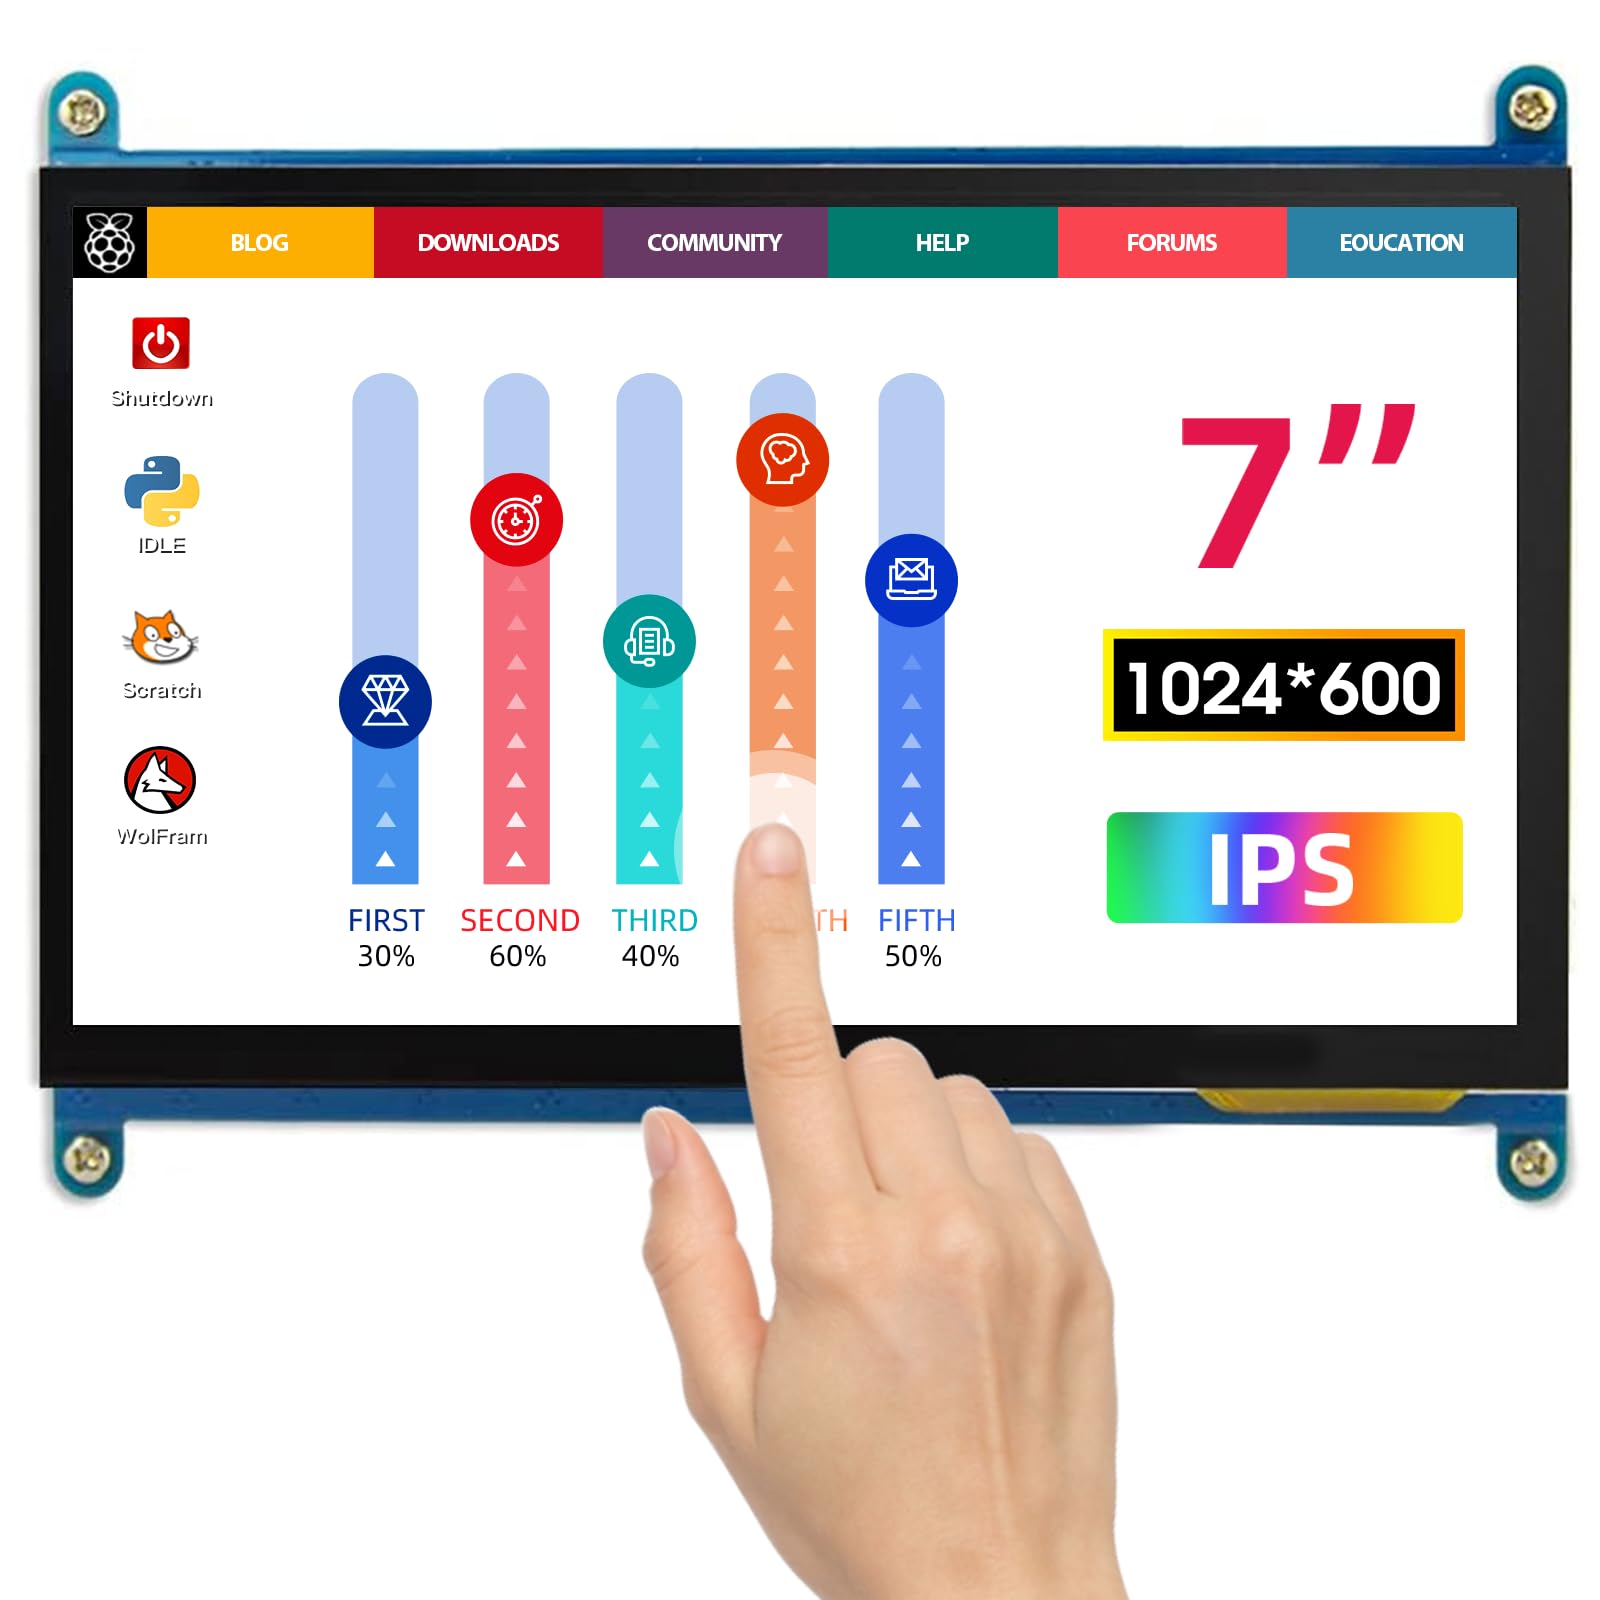 ELECROW Monitor Display Anzeigen IPS Bildschirm-7 Zoll 1024X600 HD TFT LCD mit Touchscreen für Himbeere Raspberry Pi B + / 2B Raspberry Pi 3 Windows 10/8.1/8/7